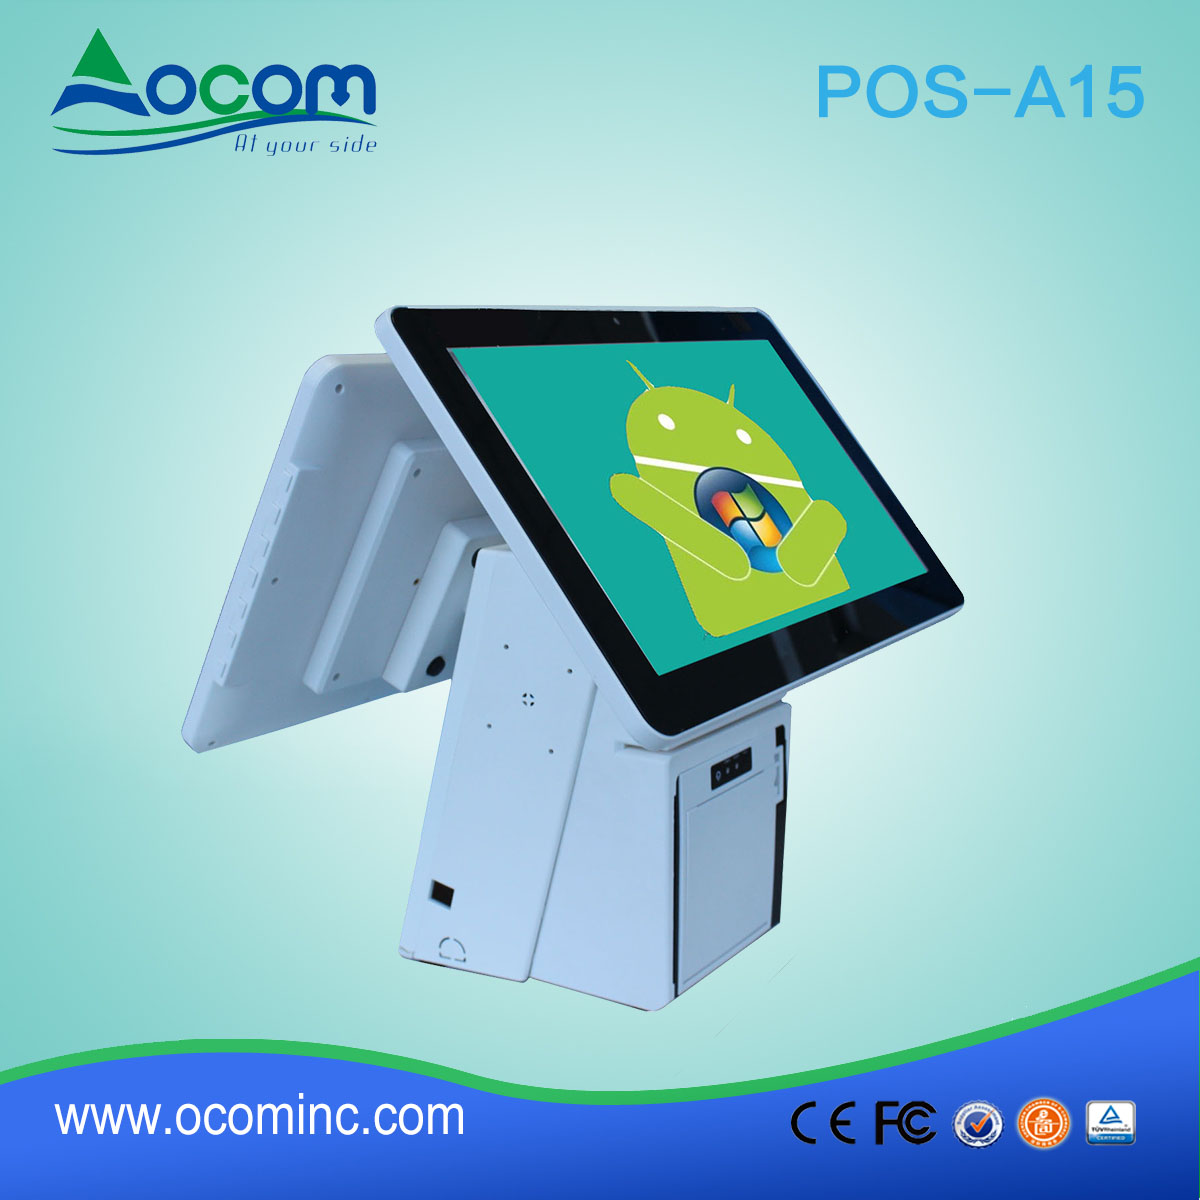 (POS-A15) 15,6 pouces tous ine sur sreen Touch POS Terminal avec imprimante thermique